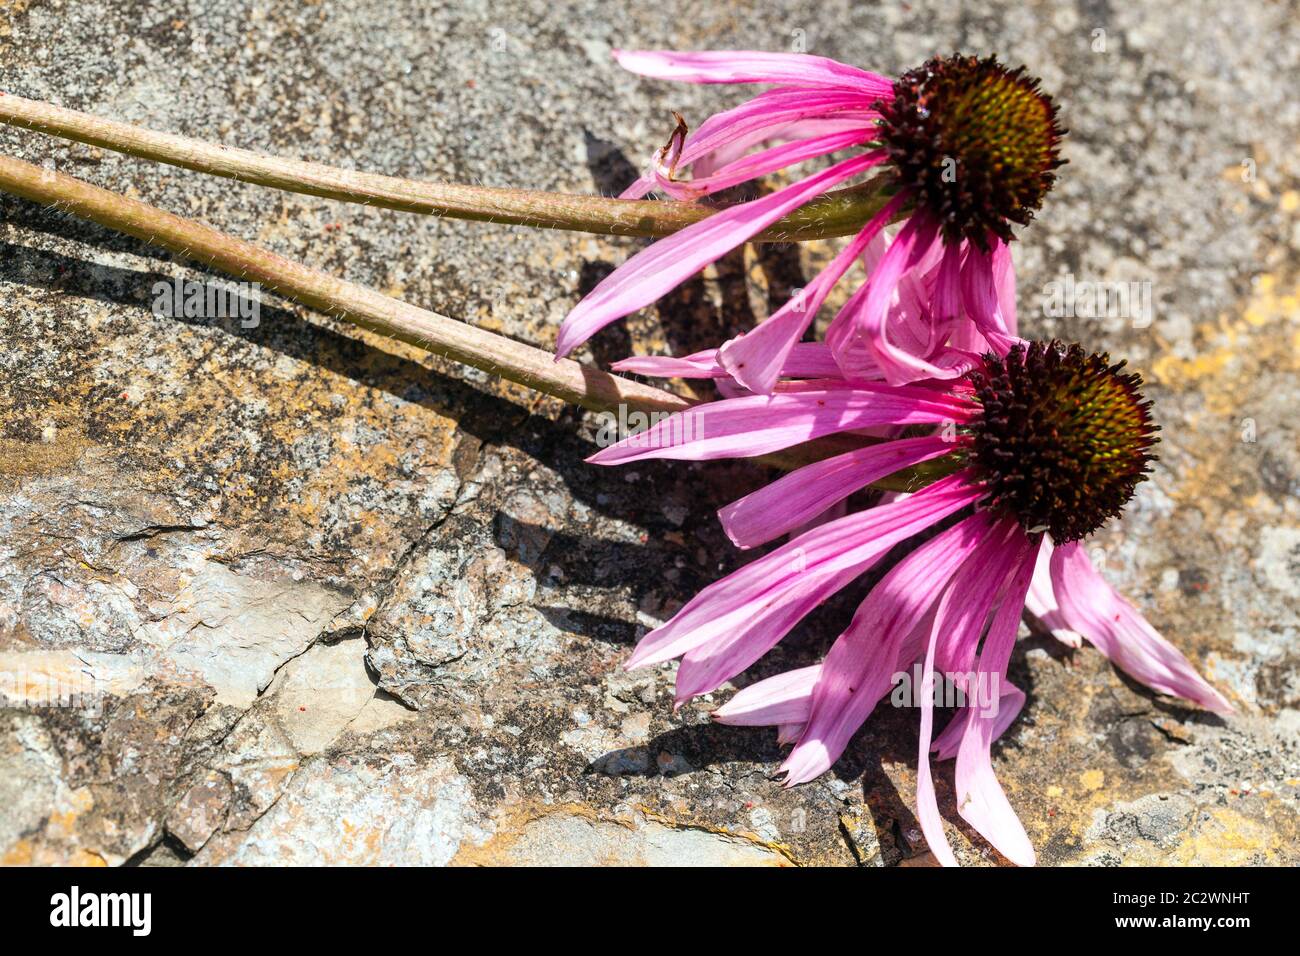 Echinacea simulata di Coneflower viola con foglia ondulata fiore viola, Coneflower, Heads Glade Coneflower lungo, stretto, che lascia cadere petali dal rosa pallido al viola Foto Stock